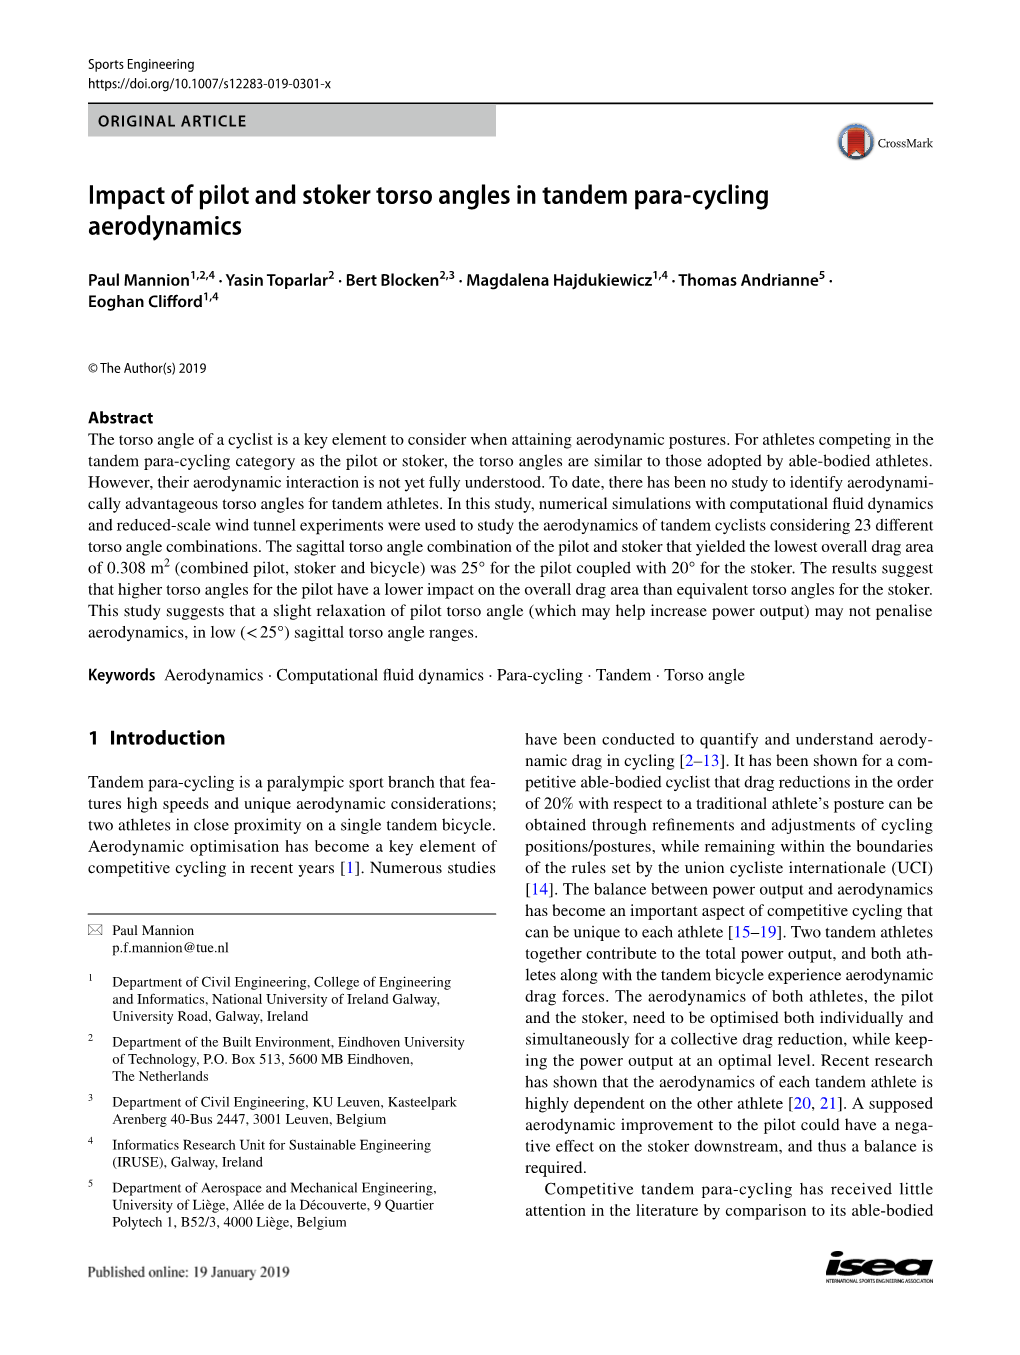 Impact of Pilot and Stoker Torso Angles in Tandem Para-Cycling Aerodynamics